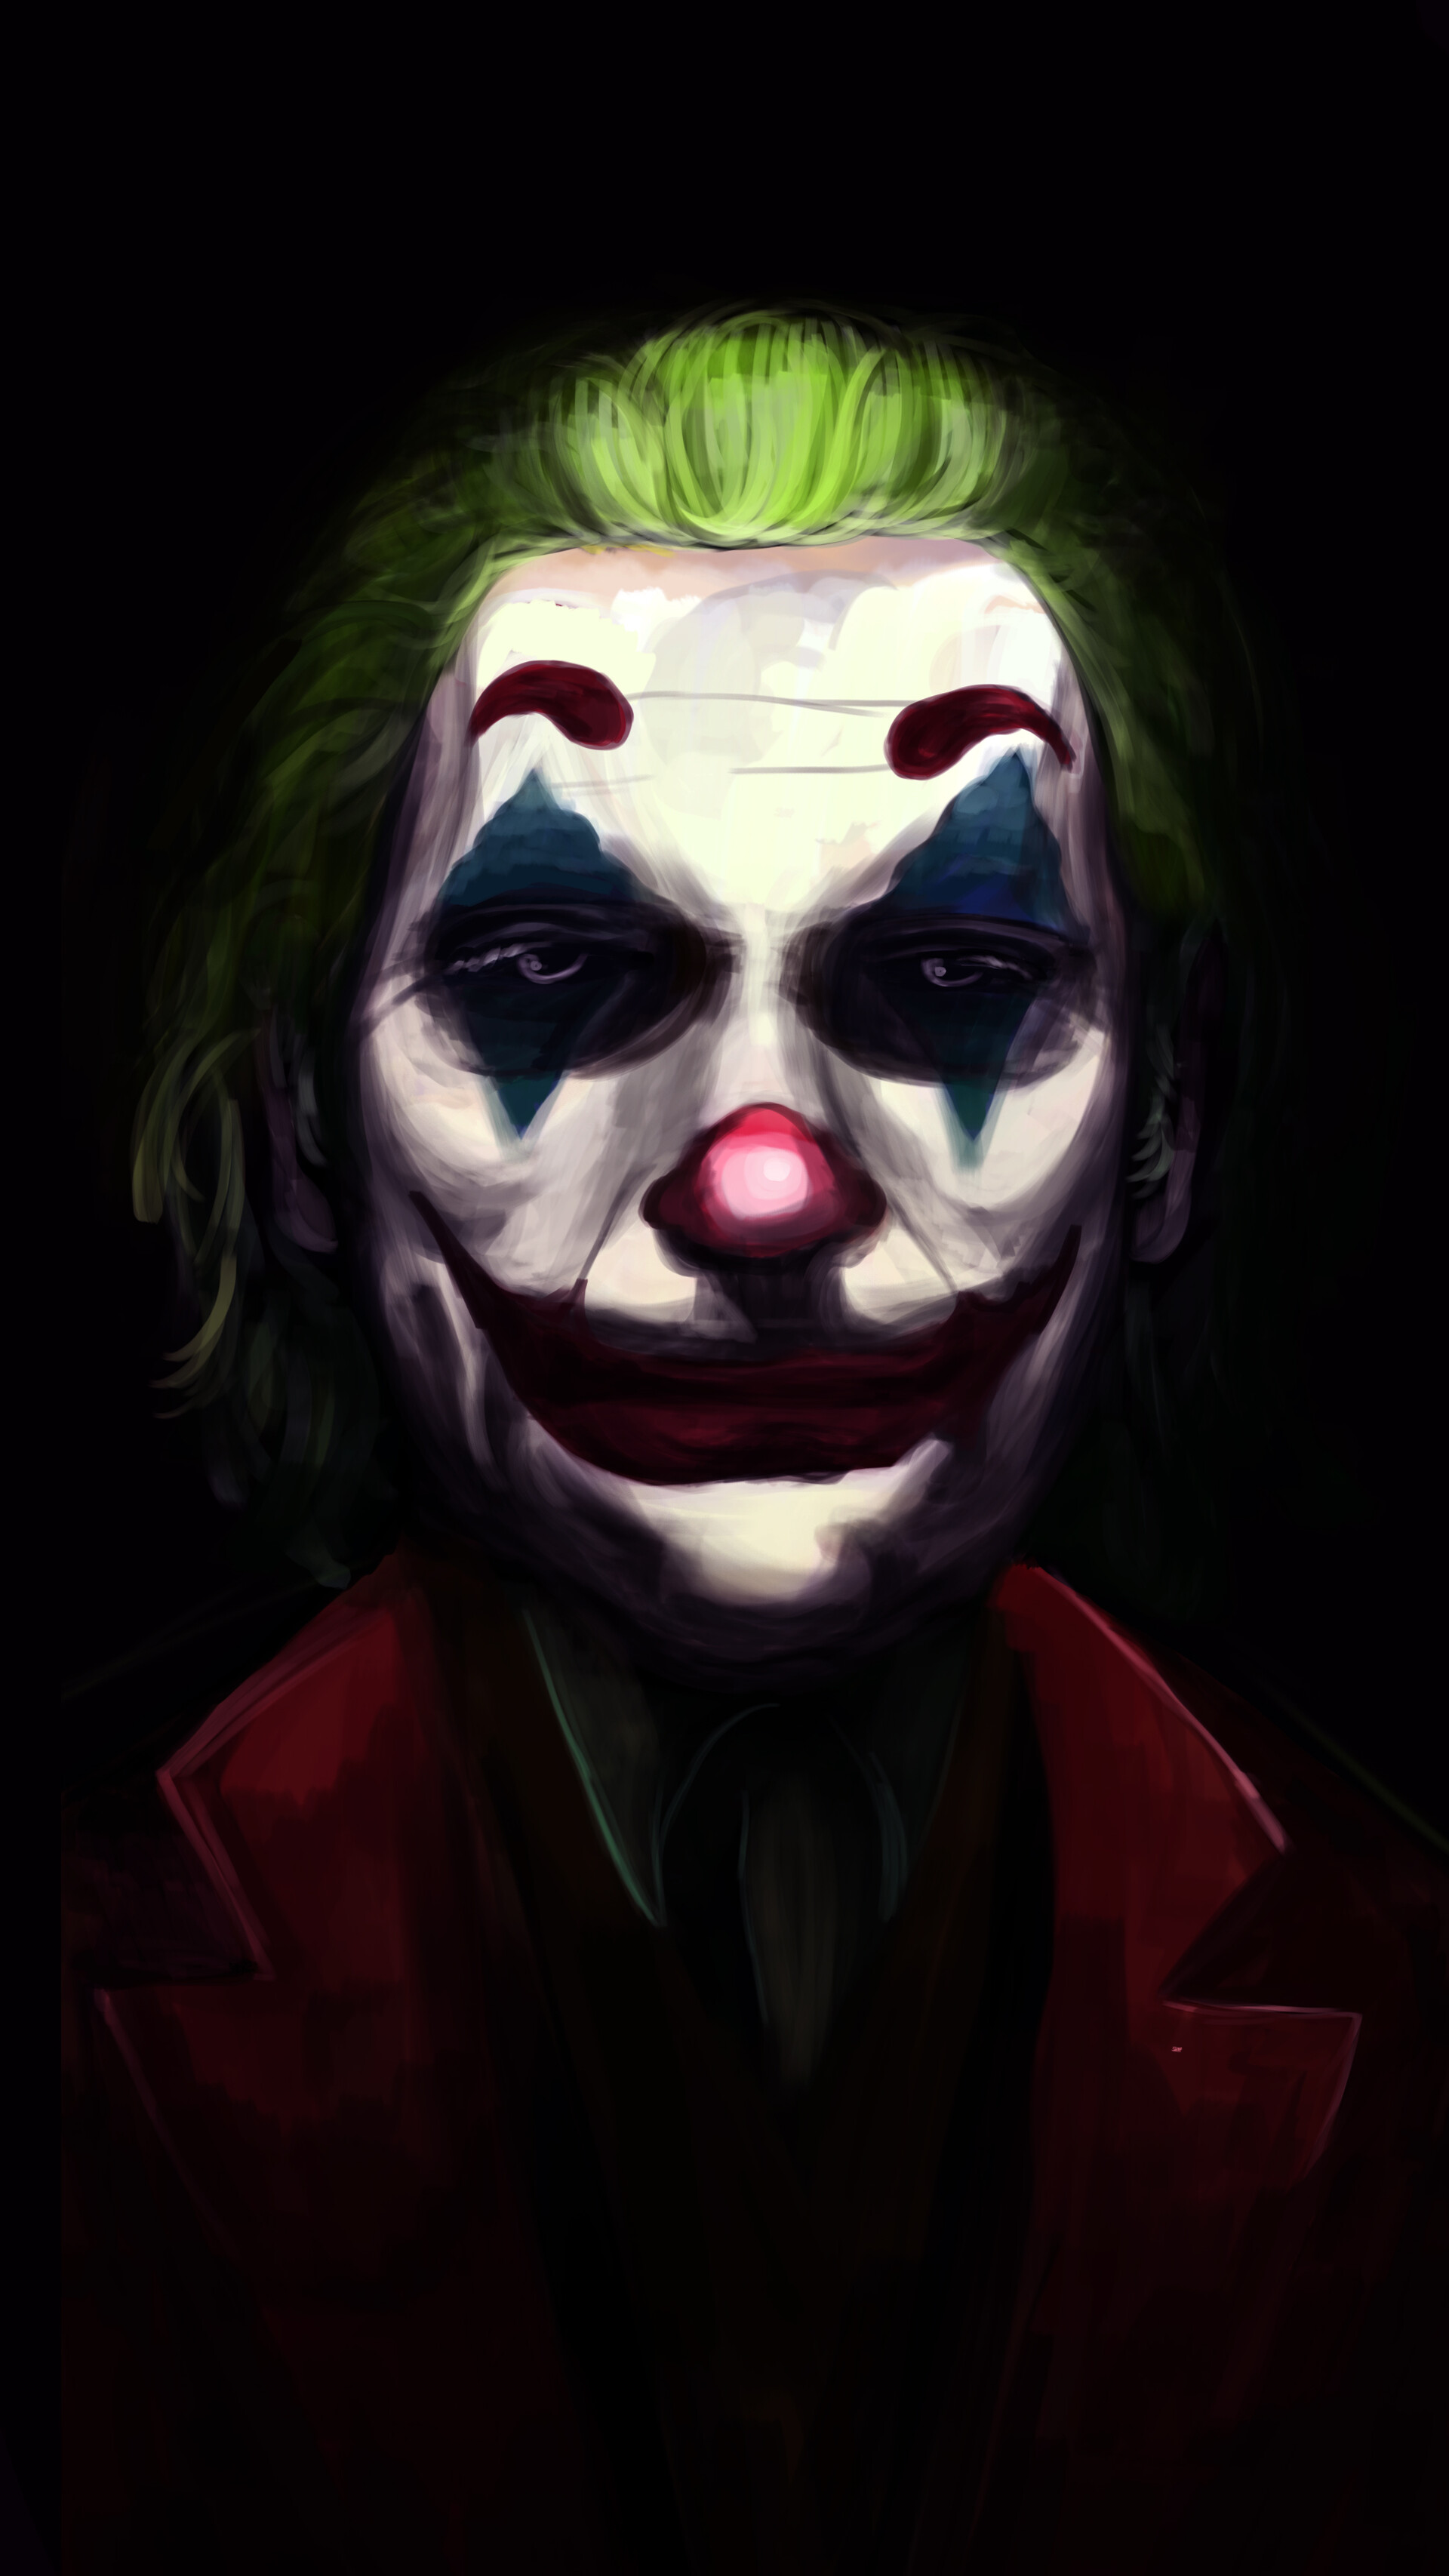 ArtStation - Joker Portrait